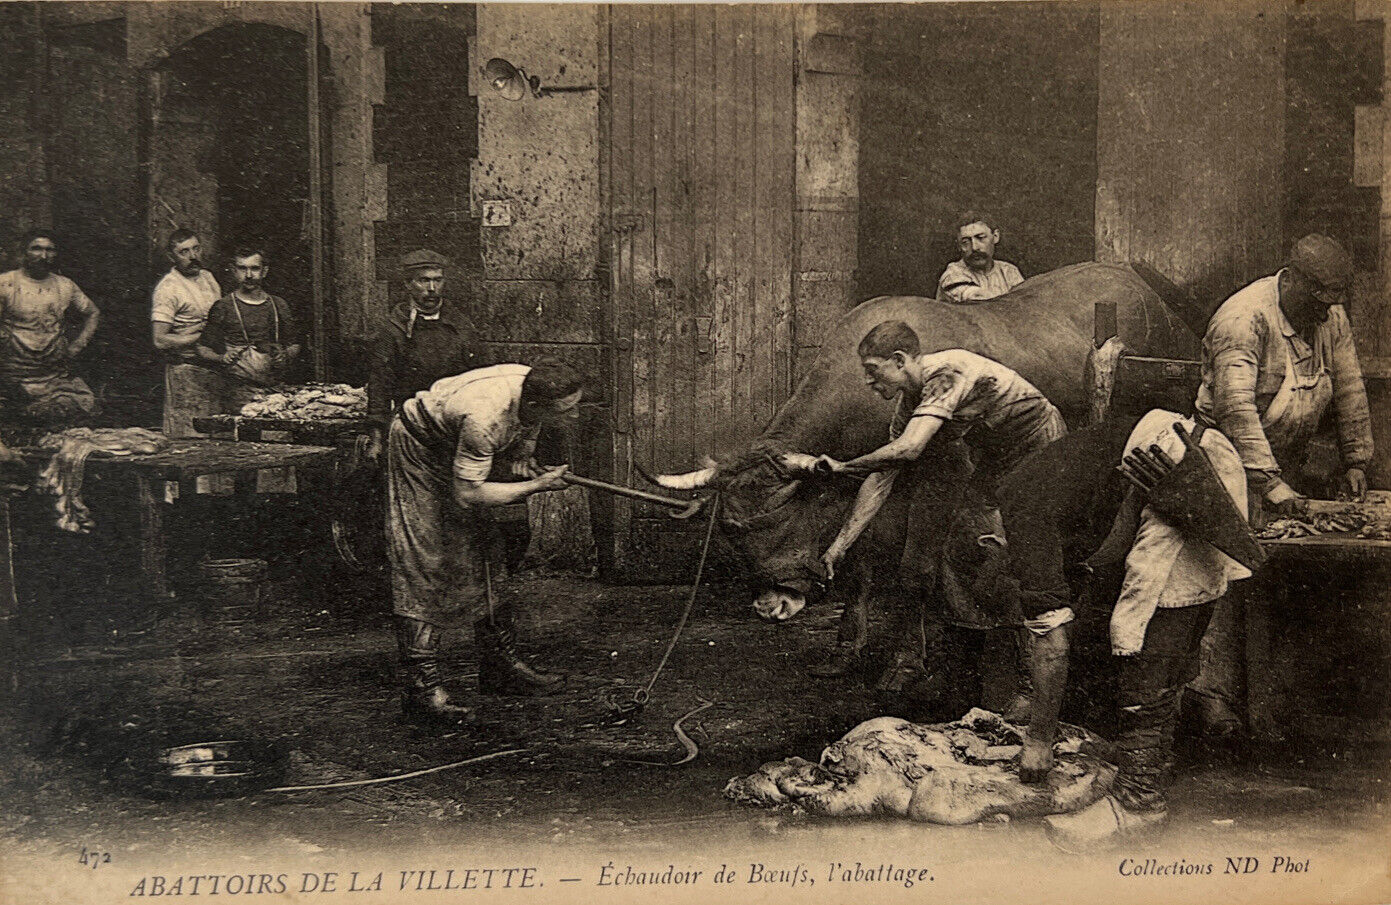 1 Cpa Paris XIX Abattoirs de la Villette - boeufs boiler, slaughter